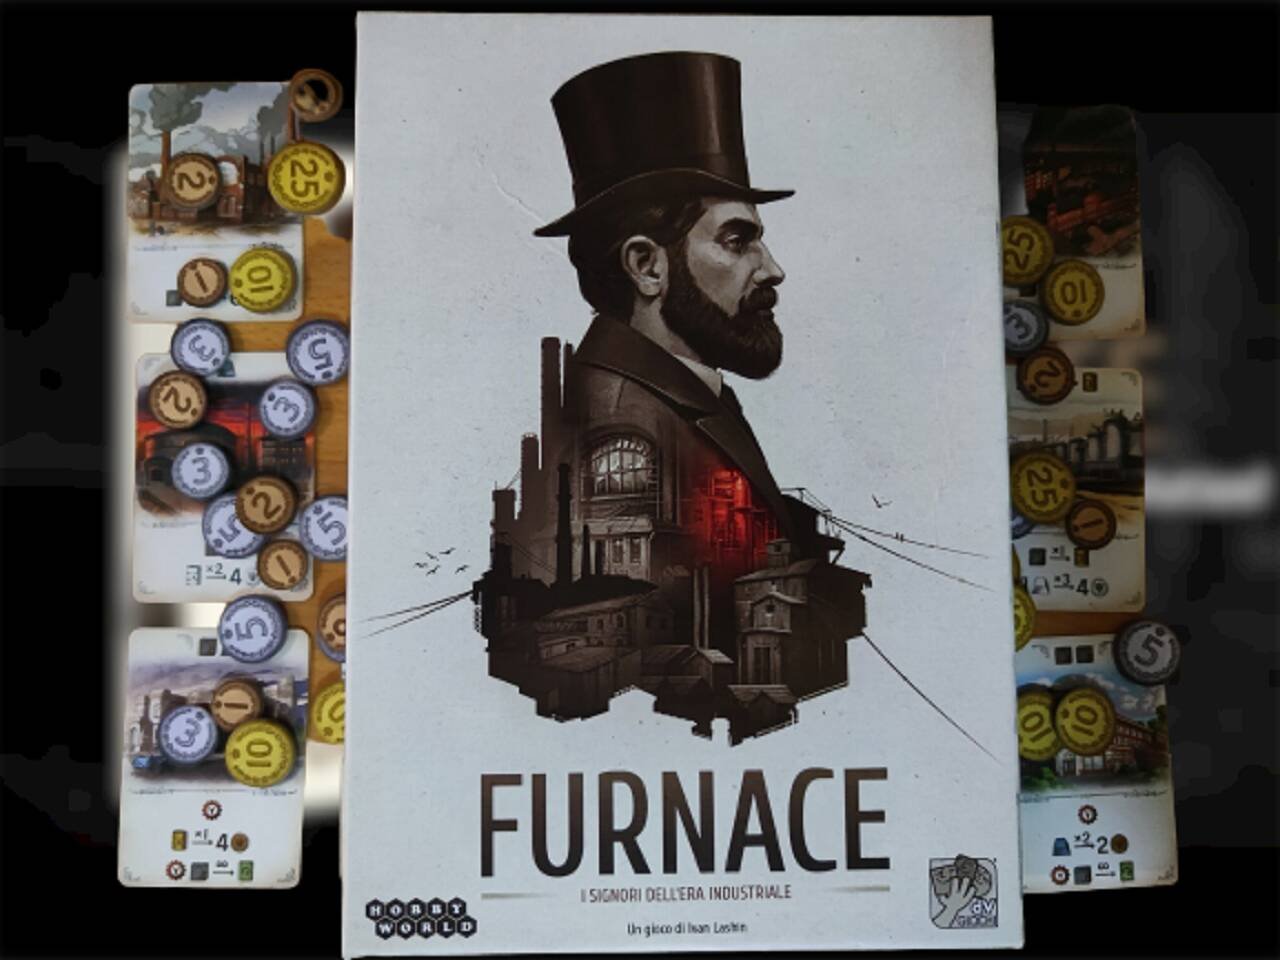 Immagine di Furnace, la recensione: benvenuti nell'Era Industriale del XIX secolo!